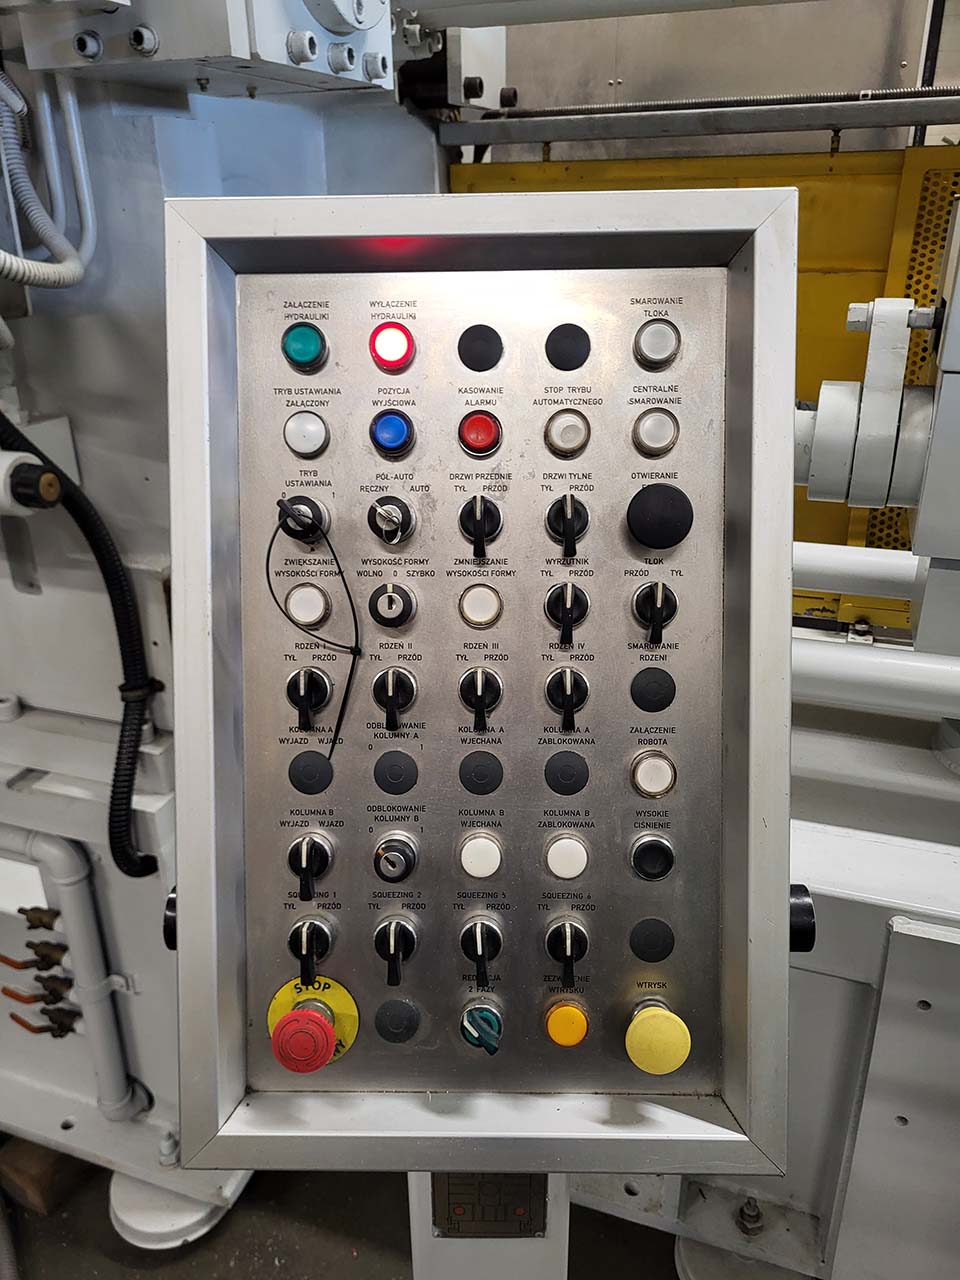 LK CDCM 400 SQ zimnokomorowa maszyna odlewnicza KK1622, używana